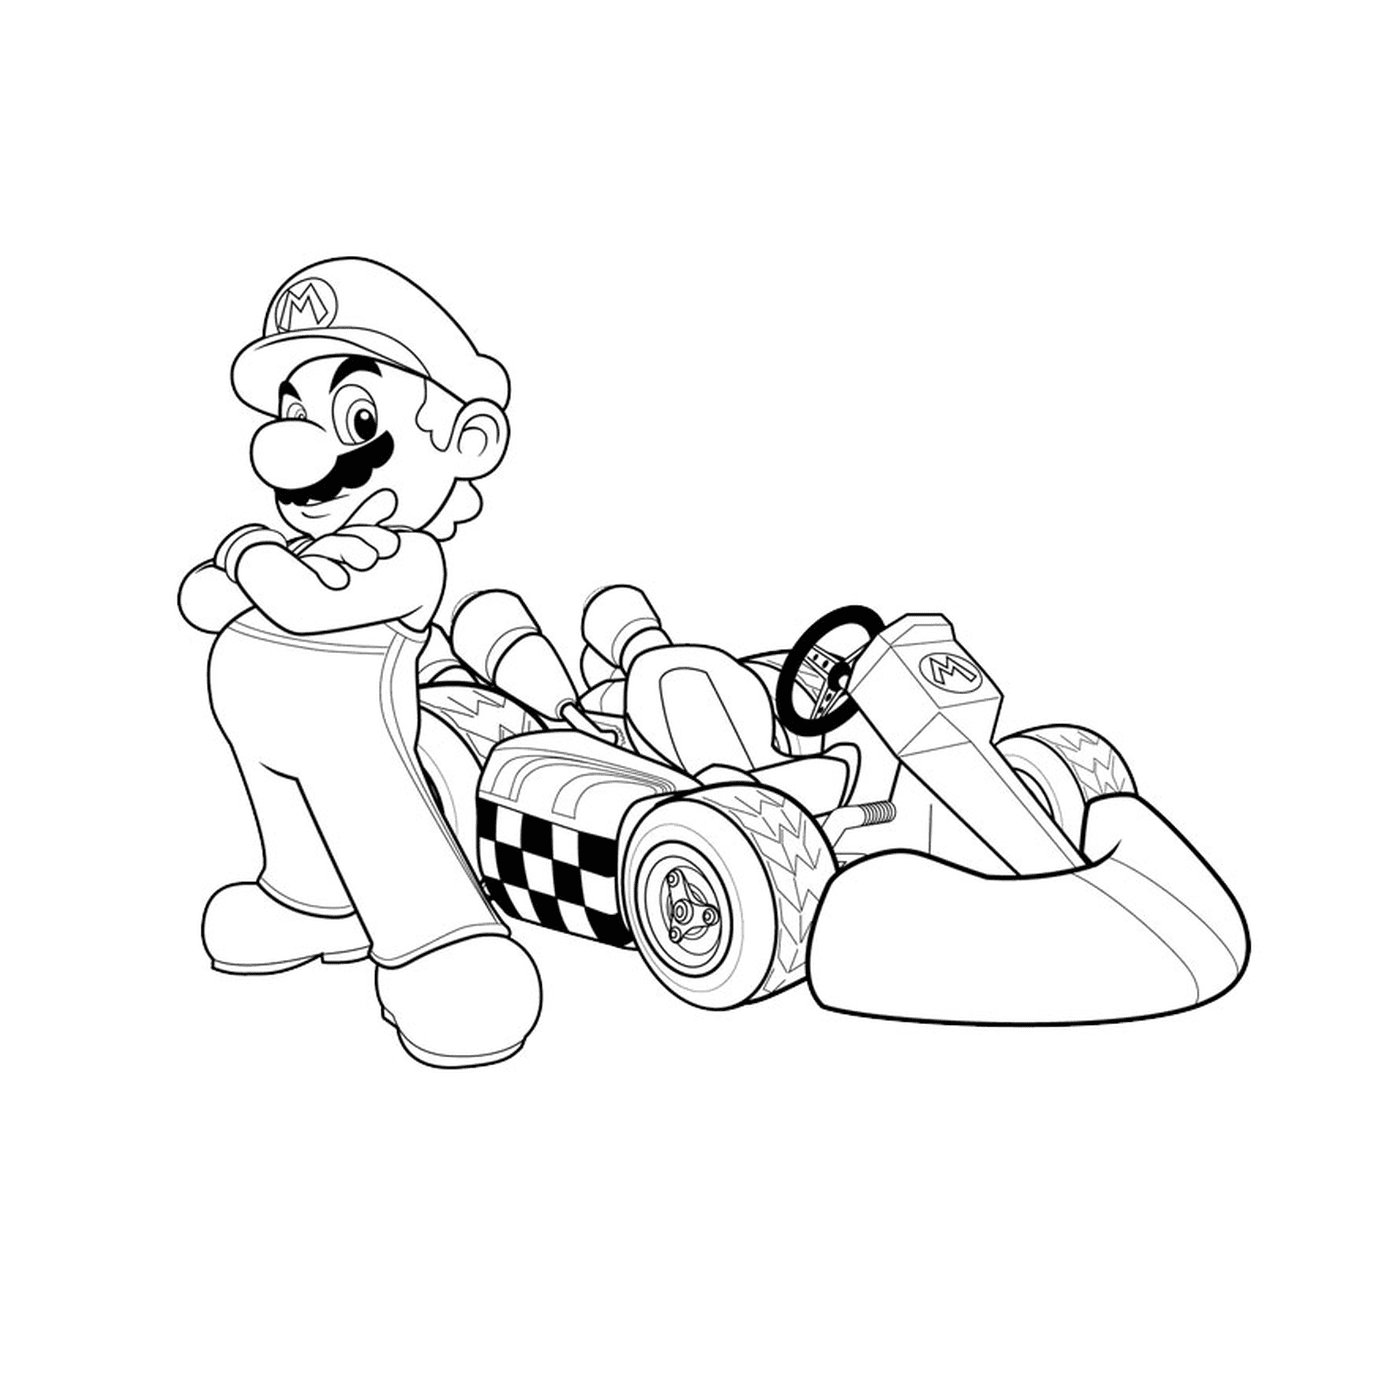  Un personaggio di Mario Kart 